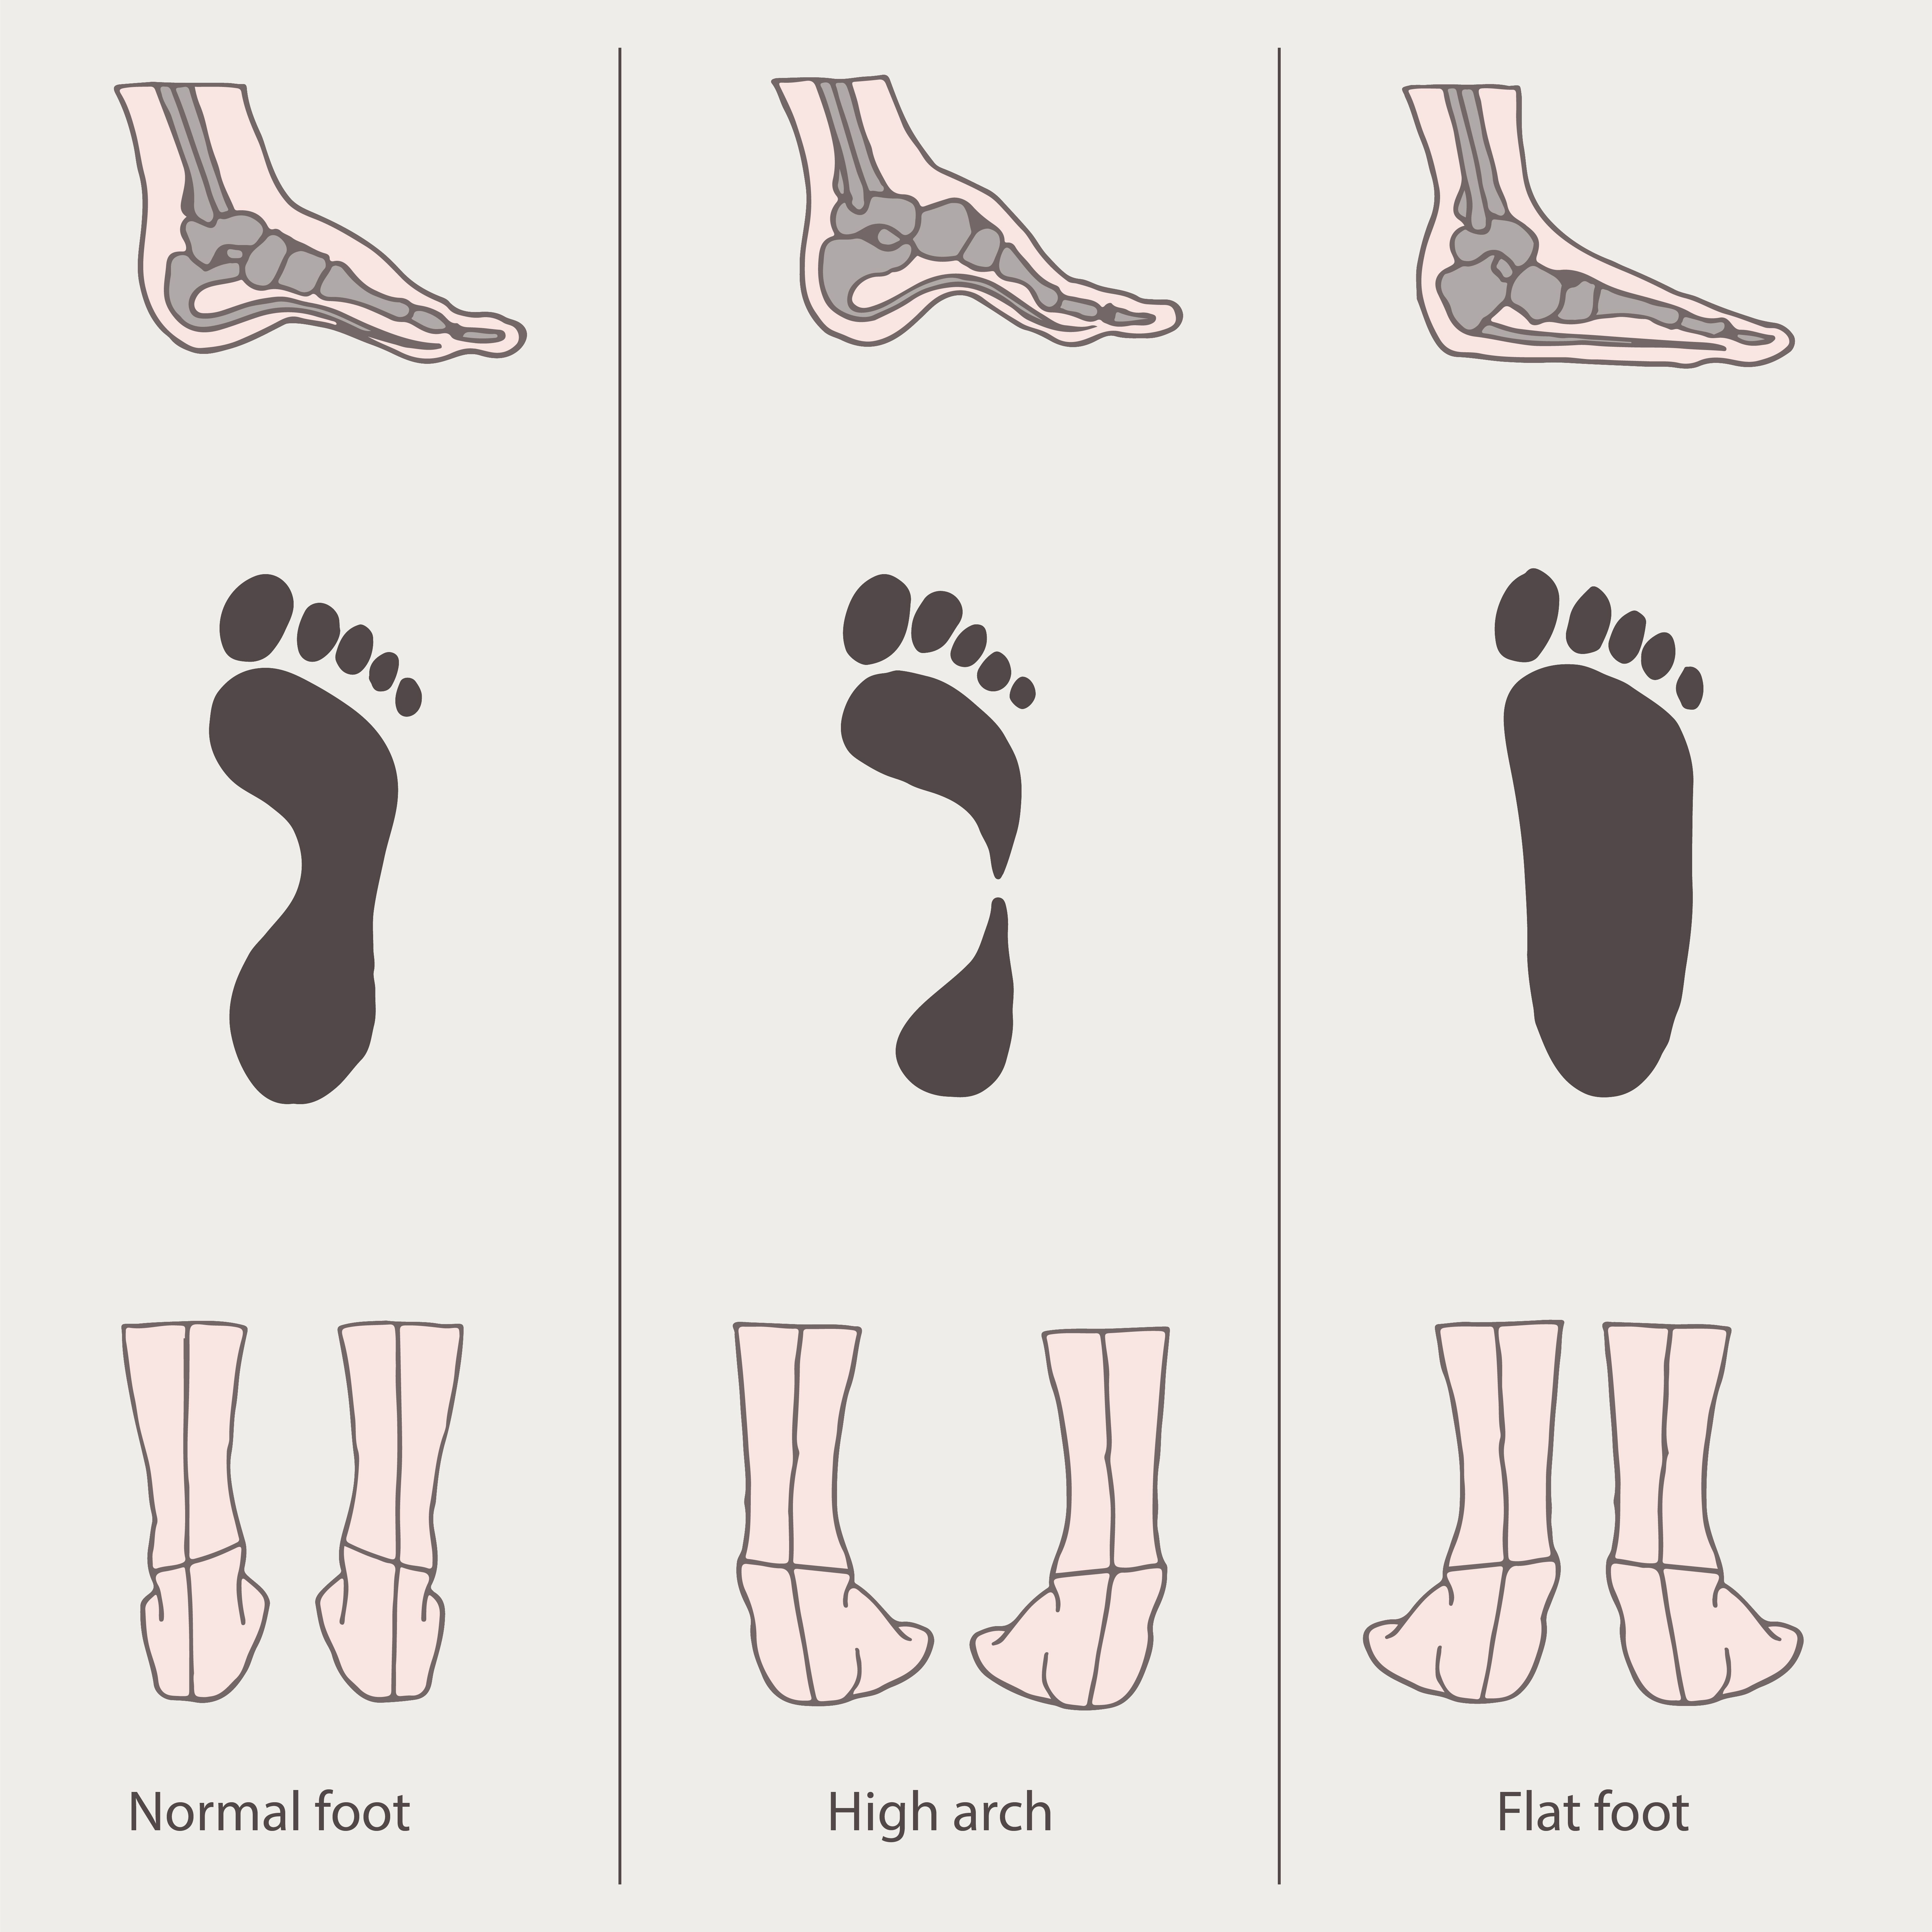 reservoir hardware Young lady Blog - Pantofi dama – Cum ii alegem in functie de forma piciorului?